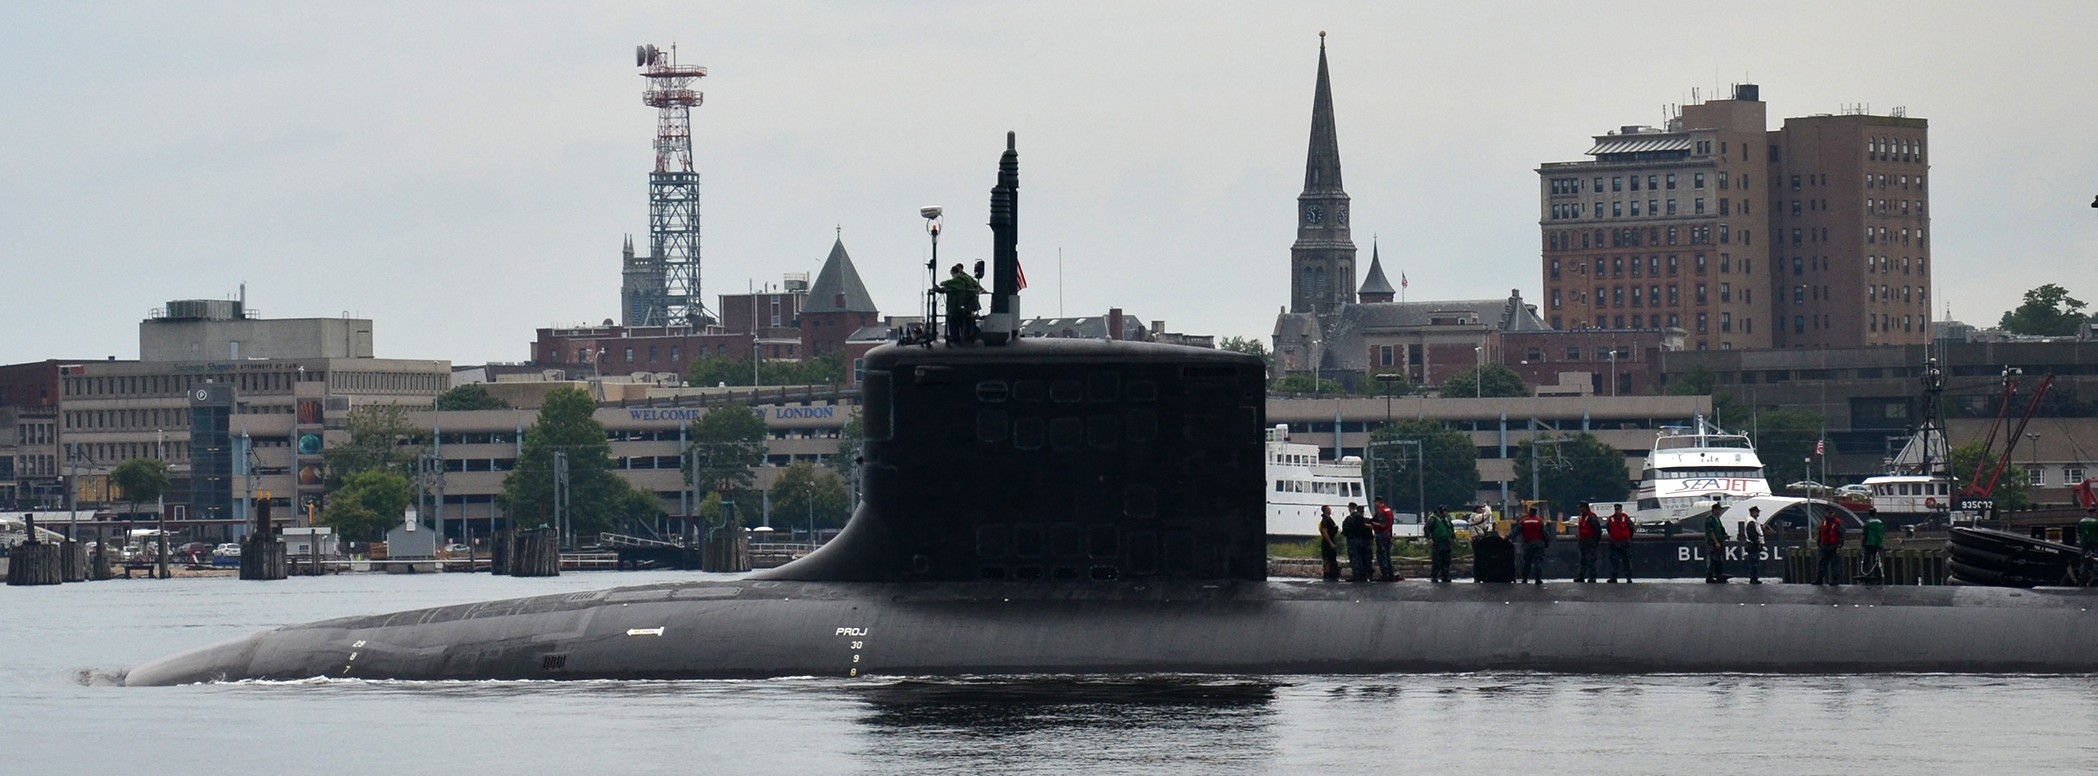 ssn-774 uss virginia attack submarine navy 2013 09 groton connecticut